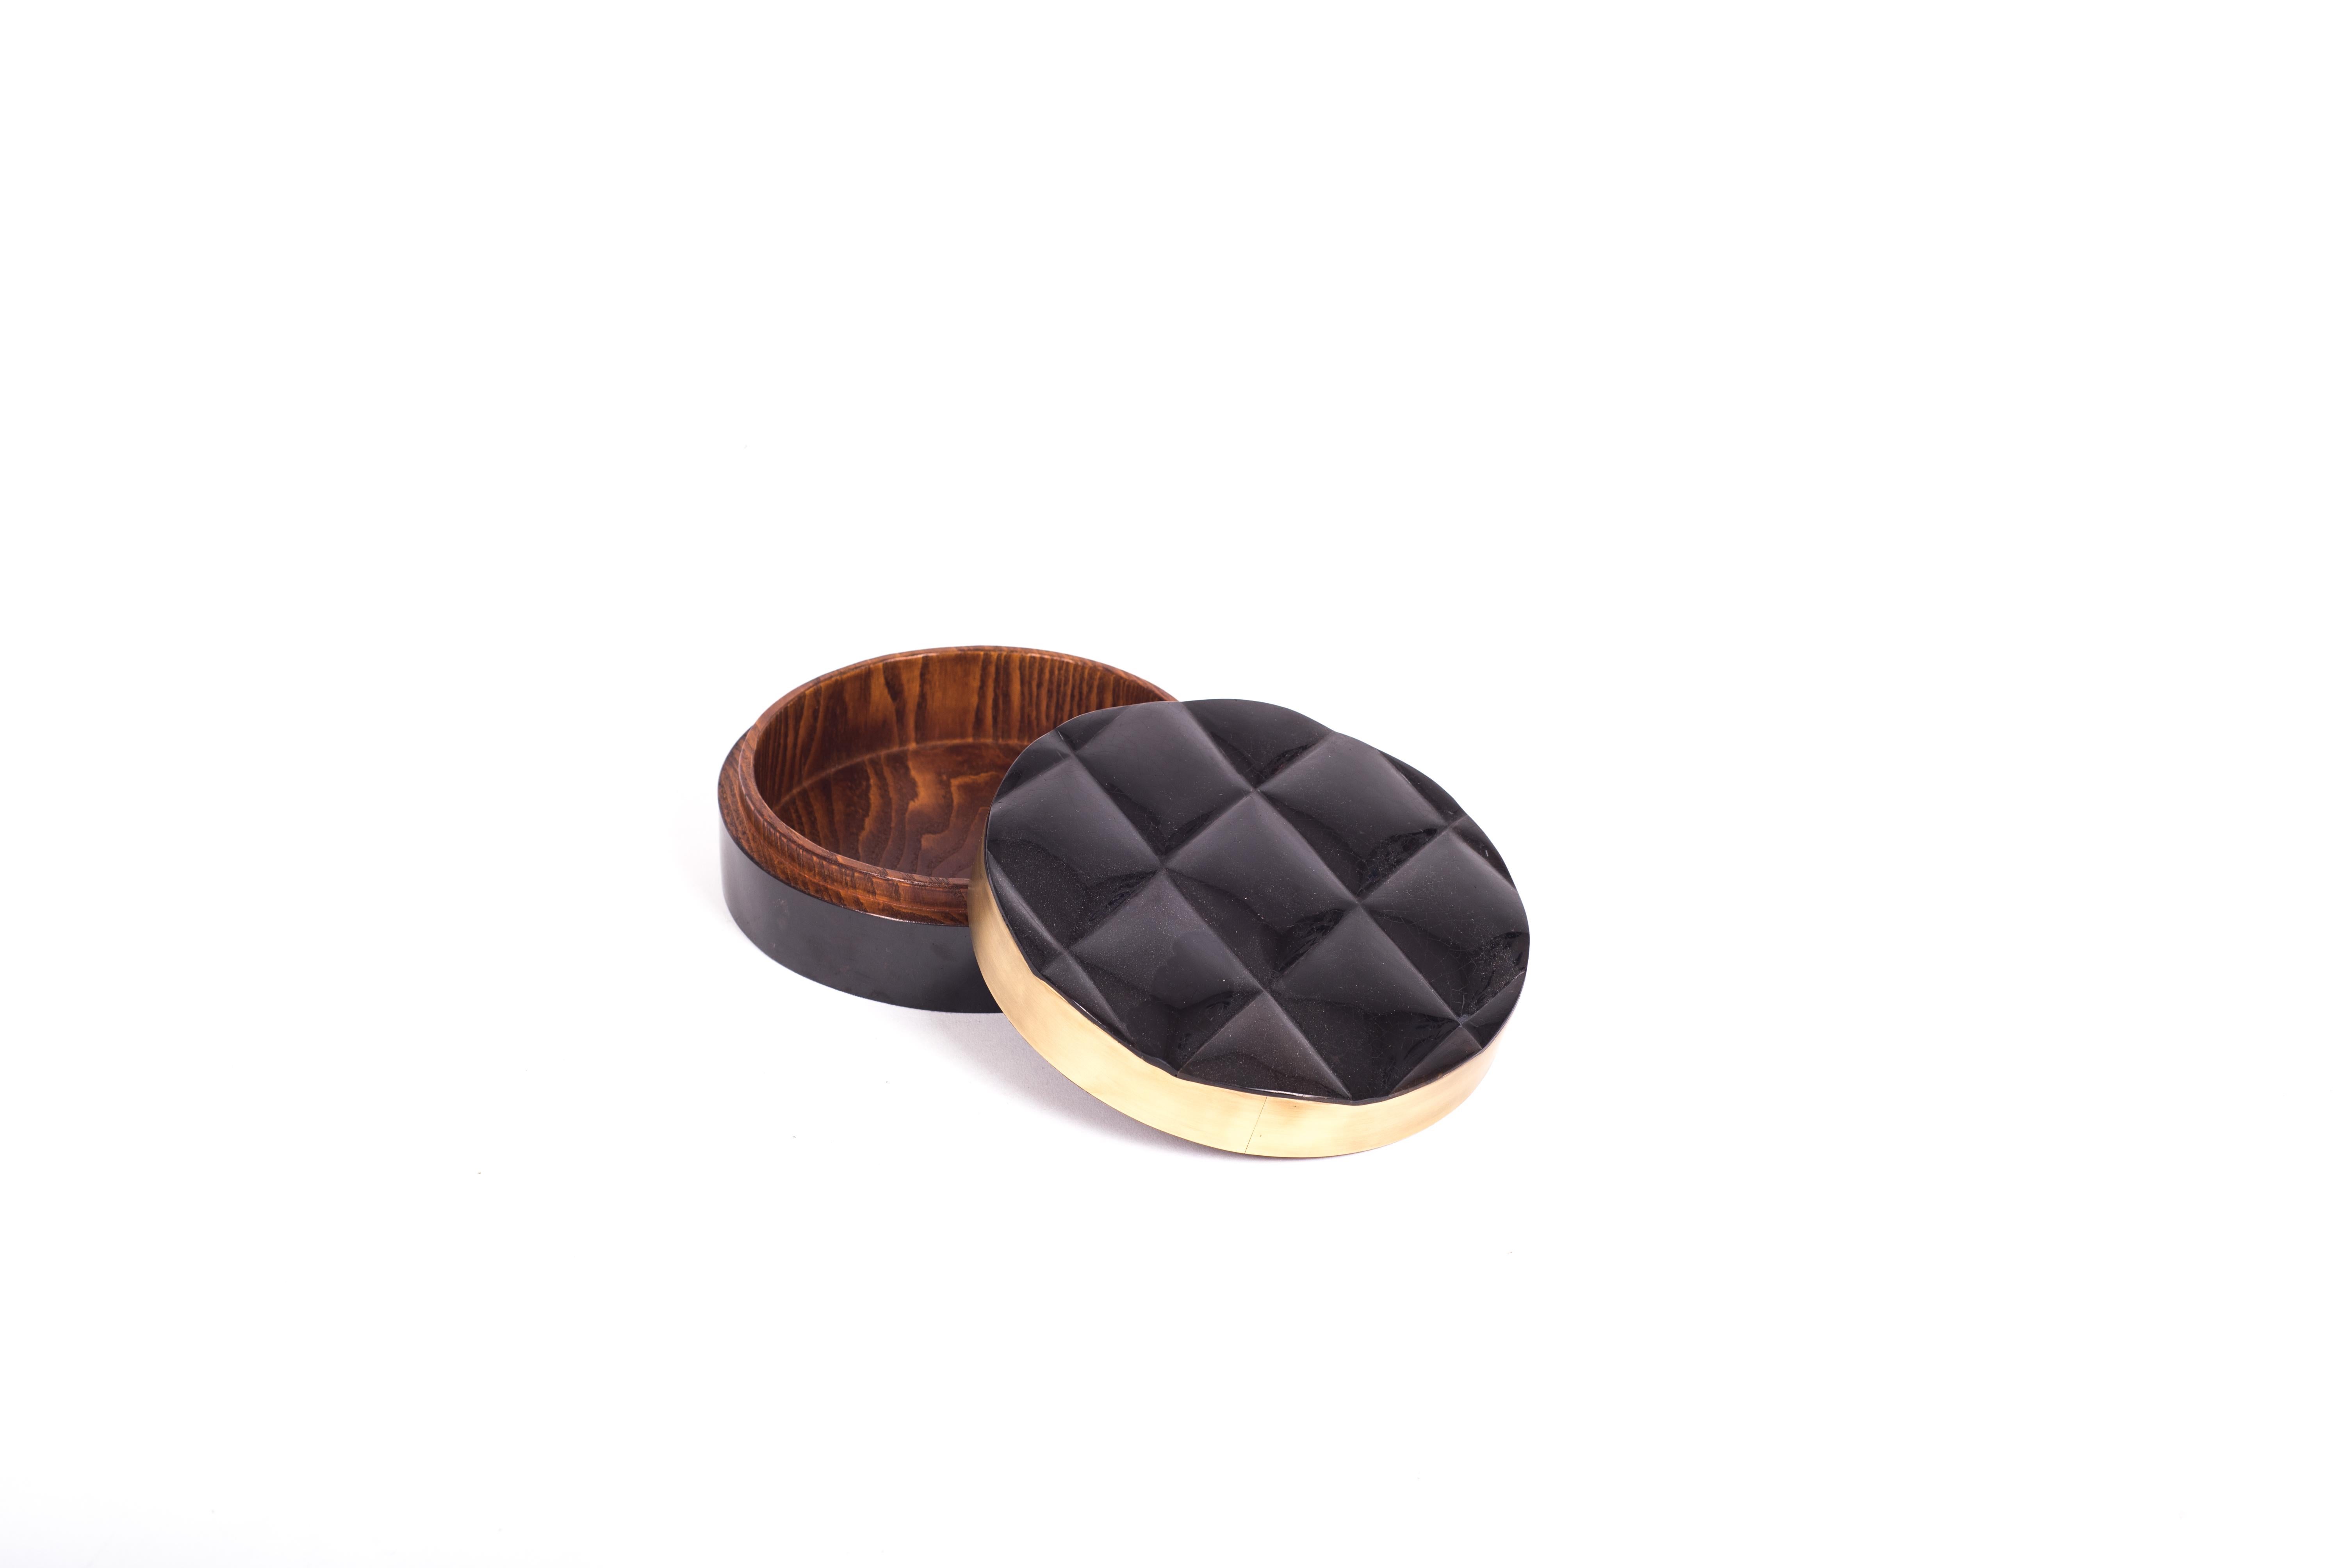 La boîte Coco est une pièce d'accent sophistiquée et luxueuse avec ses détails matelassés exquis. L'extérieur est marqueté en coquille de stylo noir avec un cadre en laiton bronze-patiné et l'intérieur est marqueté en bois de gemelina. Cette annonce